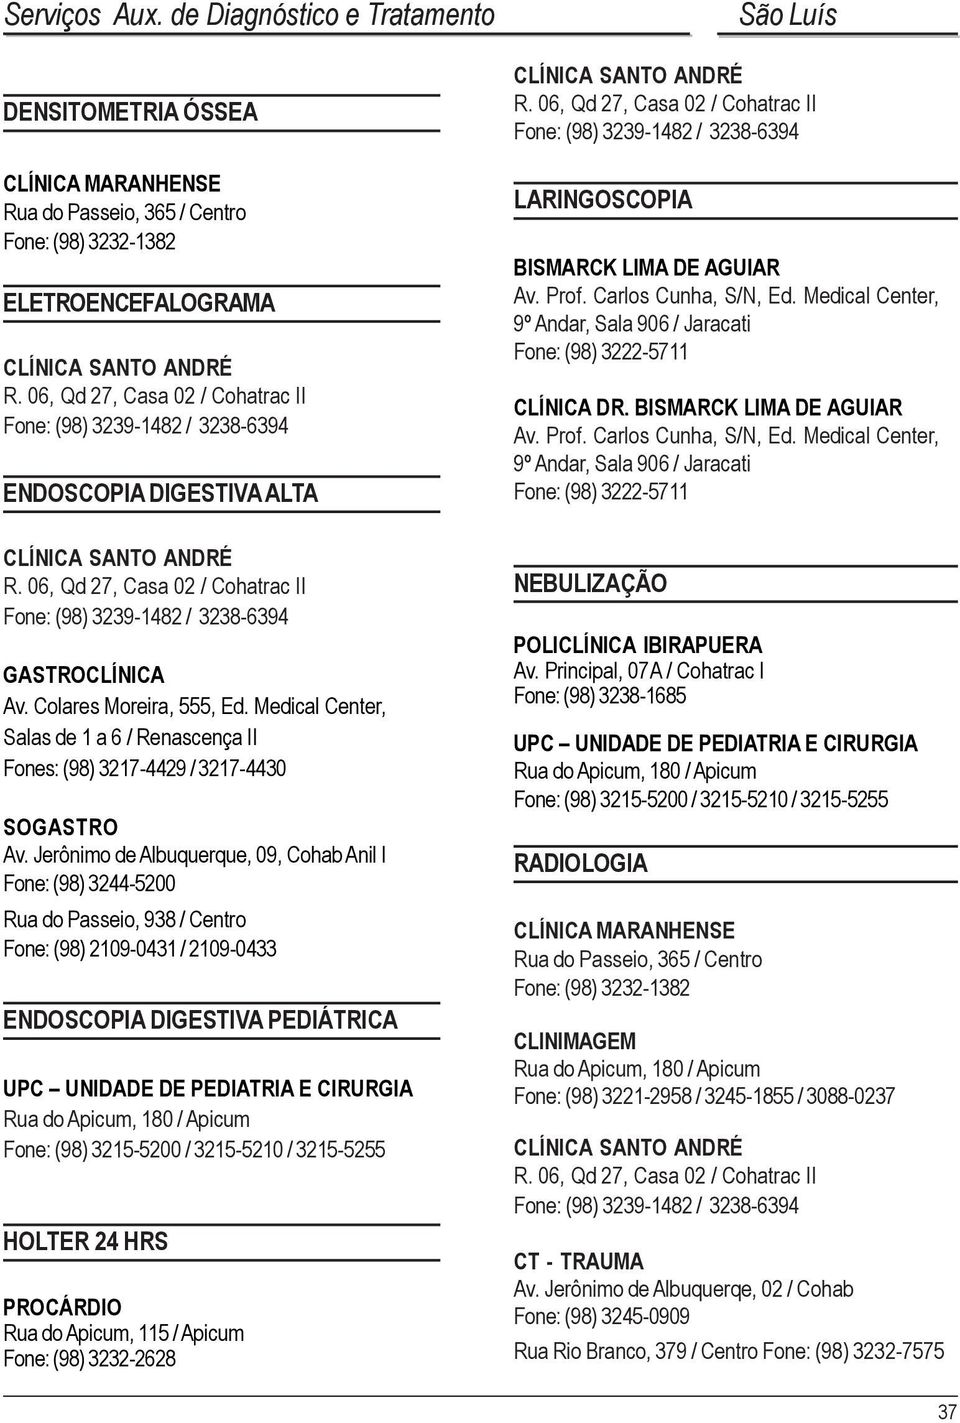 AGUIAR Av. Prof. Carlos Cunha, S/N, Ed. Medical Center, 9º Andar, Sala 906 / Jaracati Fone: (98) 3222-5711 CLÍNICA DR. BISMARCK LIMA DE AGUIAR Av. Prof. Carlos Cunha, S/N, Ed. Medical Center, 9º Andar, Sala 906 / Jaracati Fone: (98) 3222-5711 GASTROCLÍNICA Av.